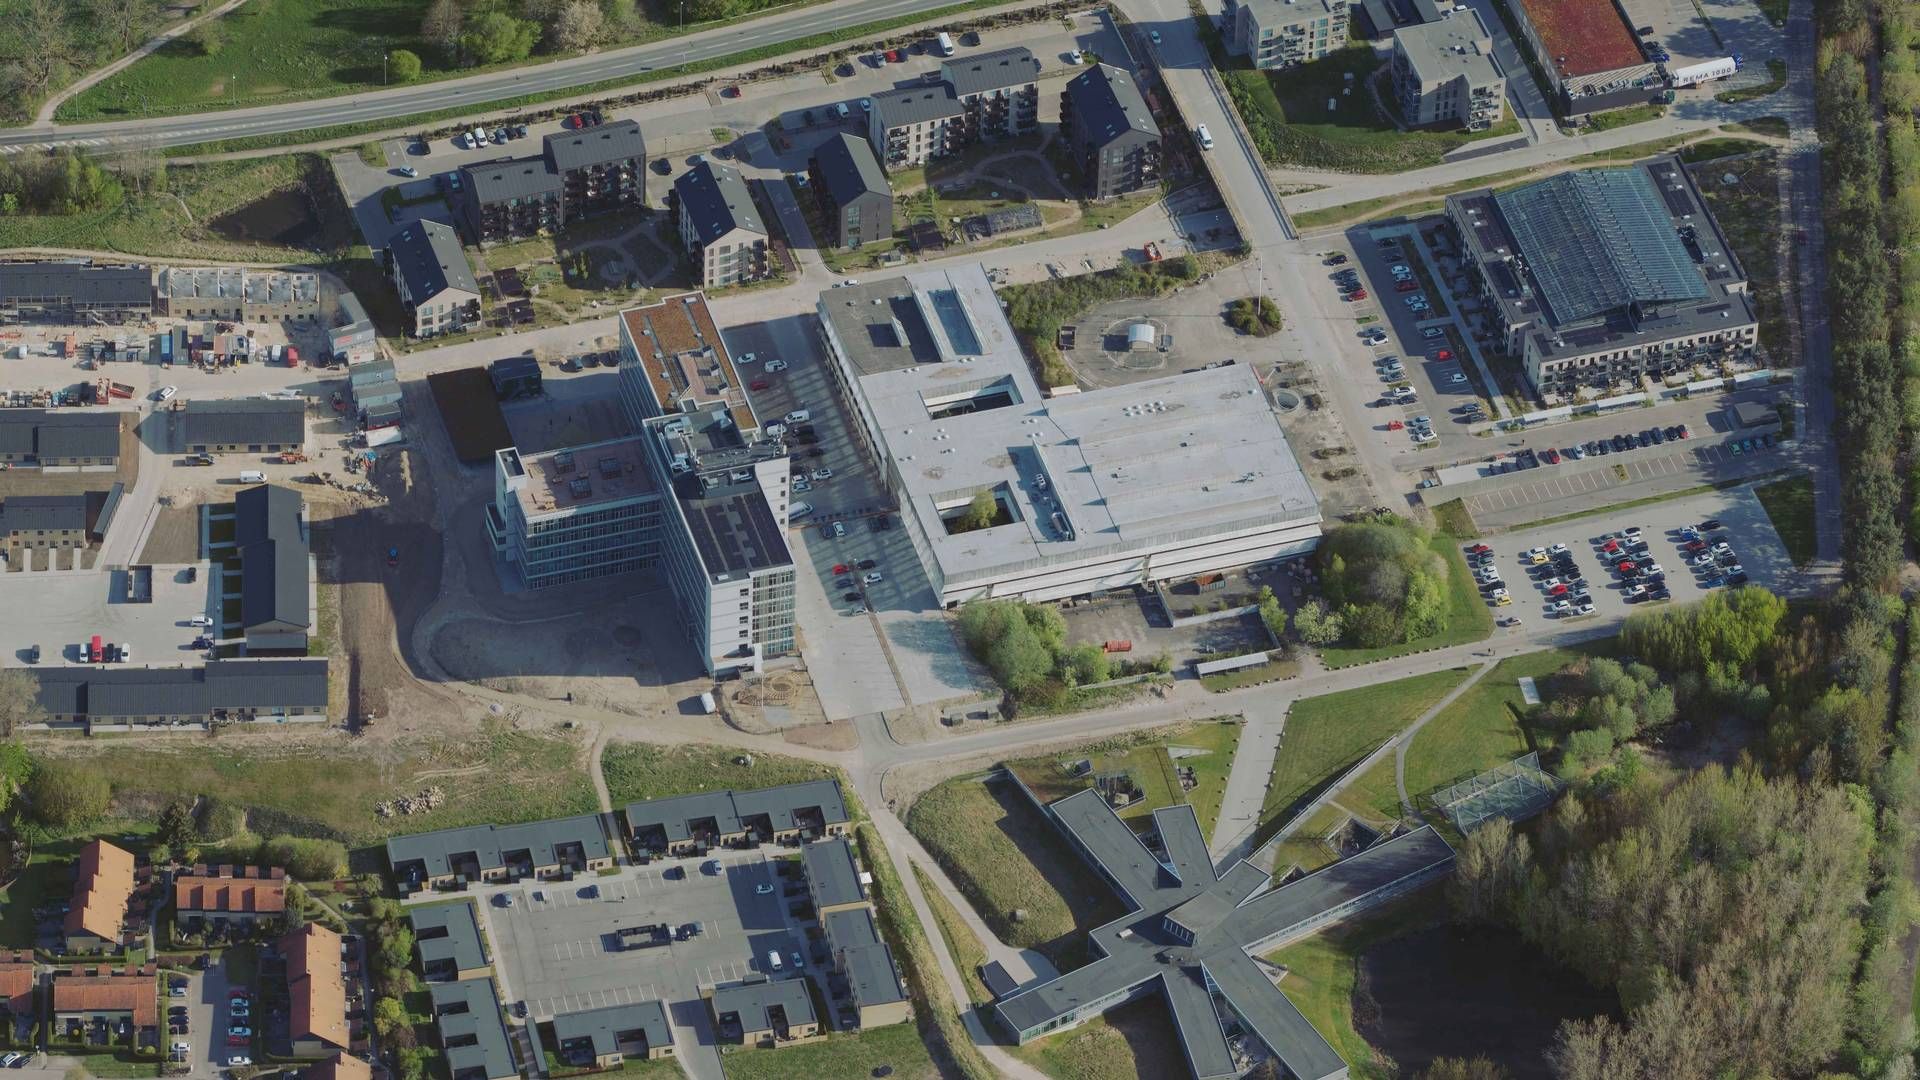 Den over 17.000 kvm store ejendom i midten af billedet er del af den tidligere hospitalsgrund i Helsingør, der i 2018 blev solgt af statens ejendomsselskab Freja. | Foto: Styrelsen for Dataforsyning og Infrastruktur